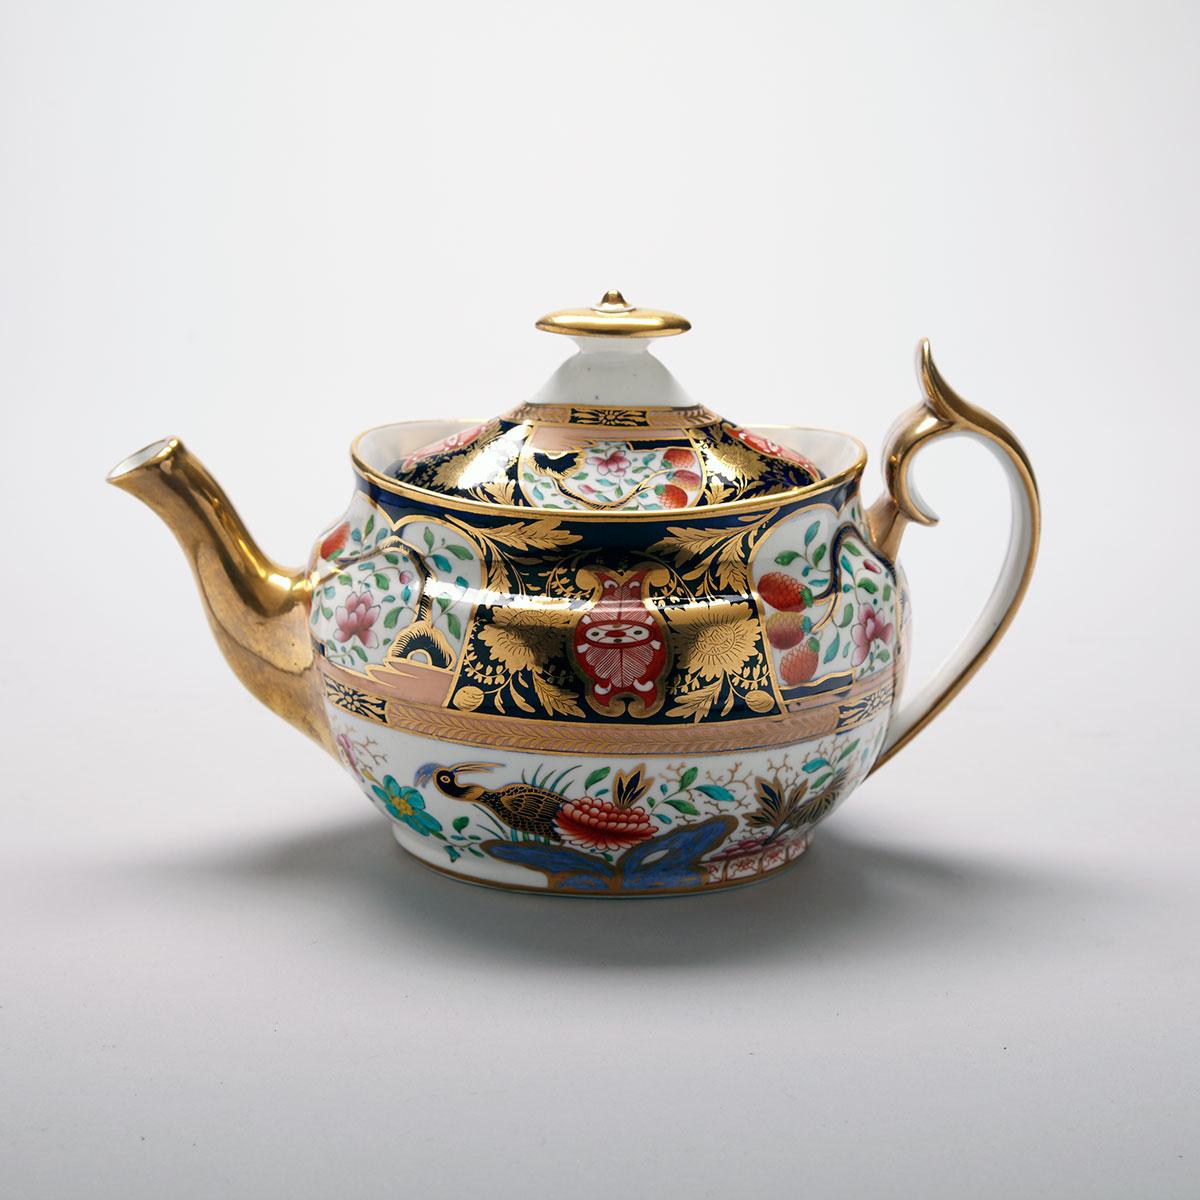 Spode Japan Pattern Teapot, c.1815